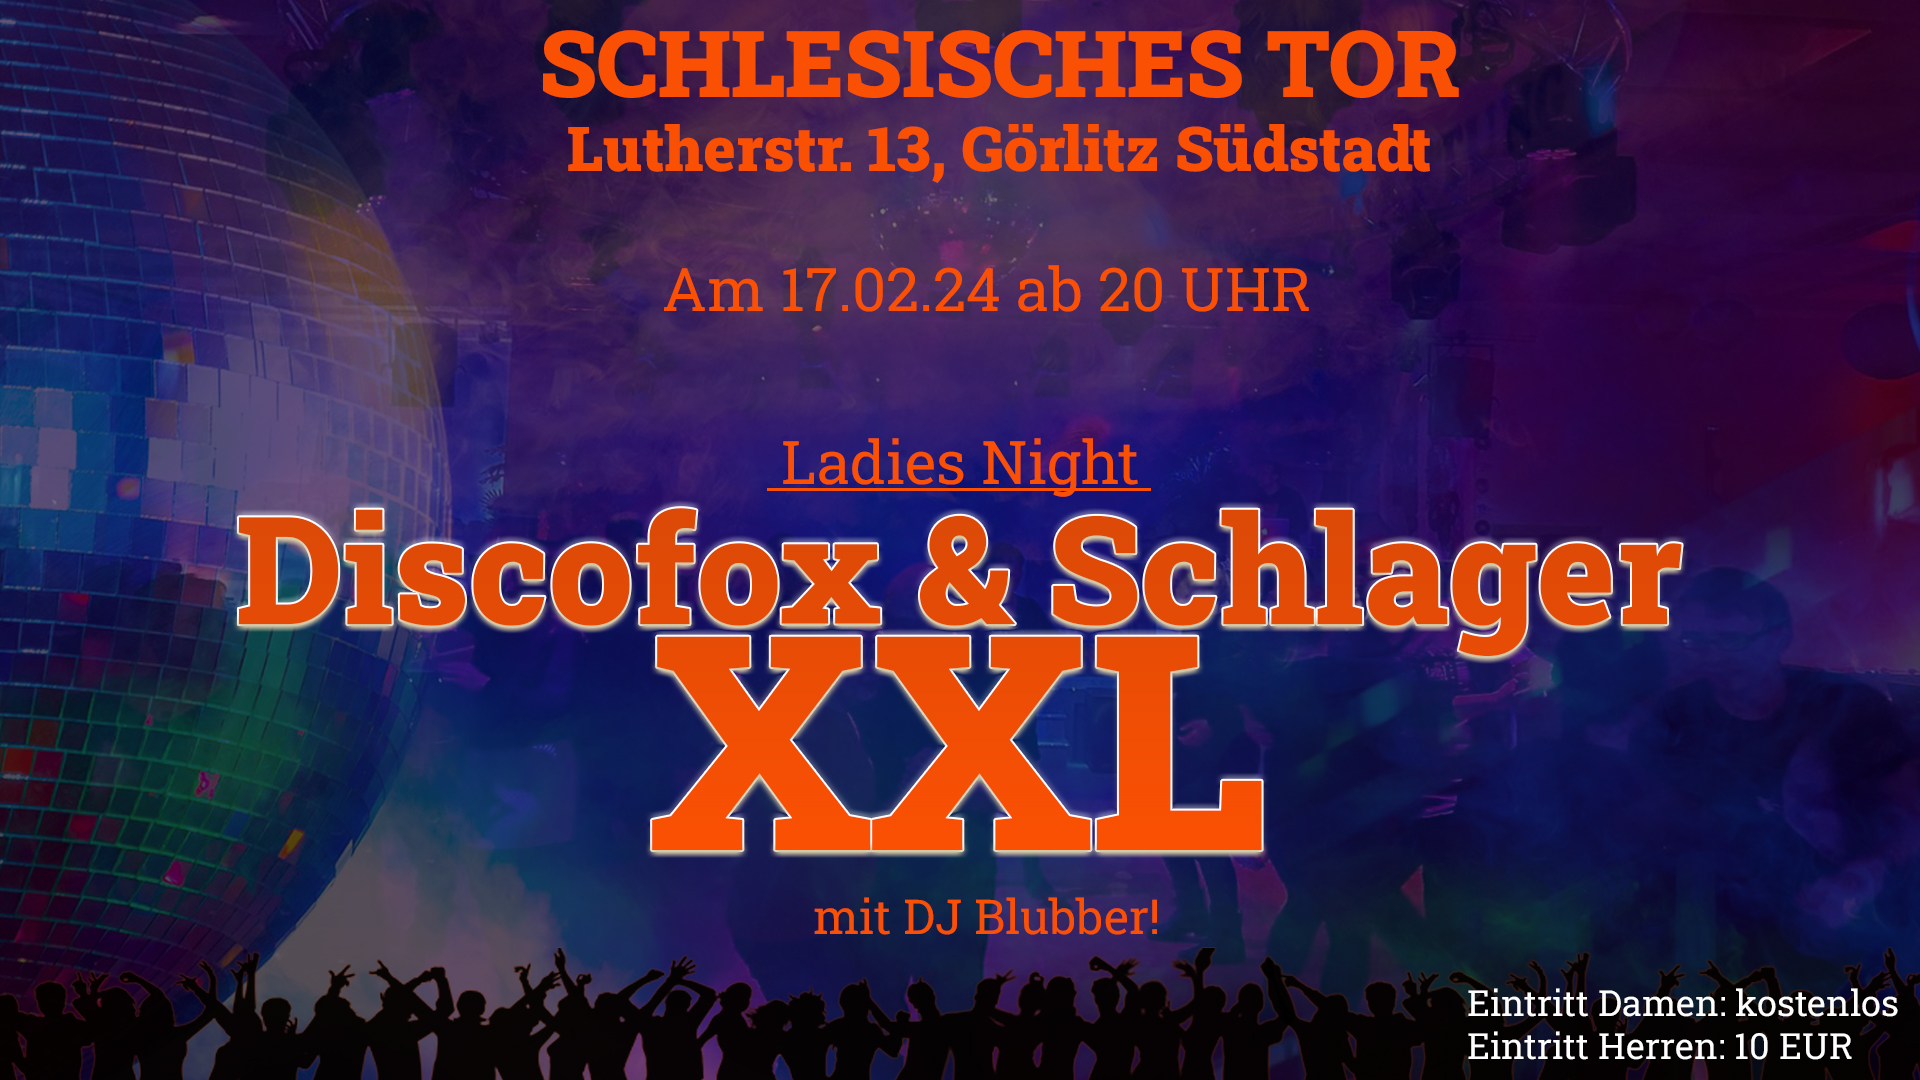 Ladies Night bei Discofox & Schlager XXL – 17.02.24